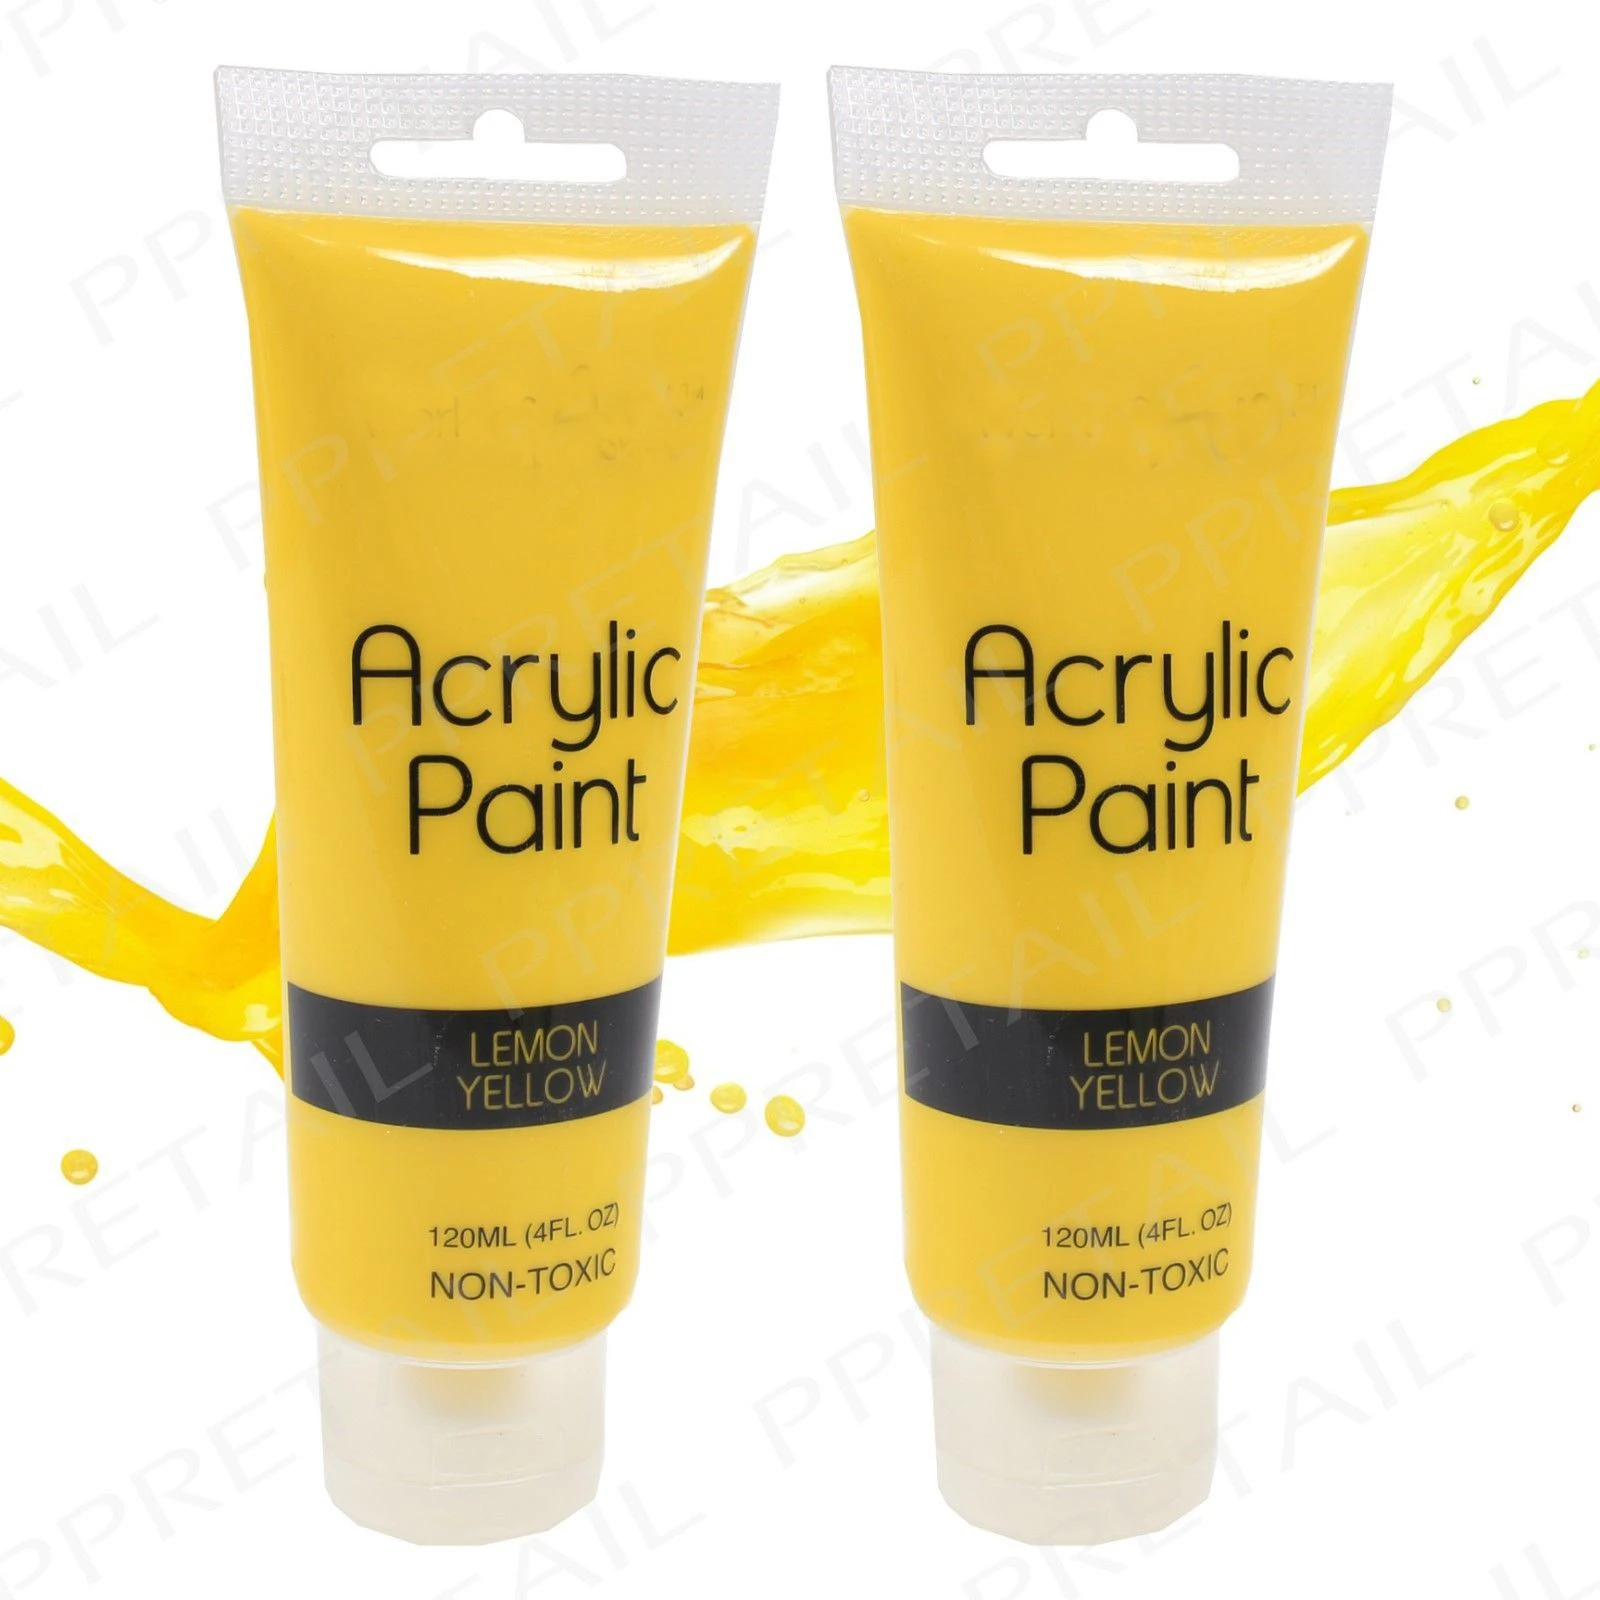 Acrylic paint best quality for art paints diy acrylic paint